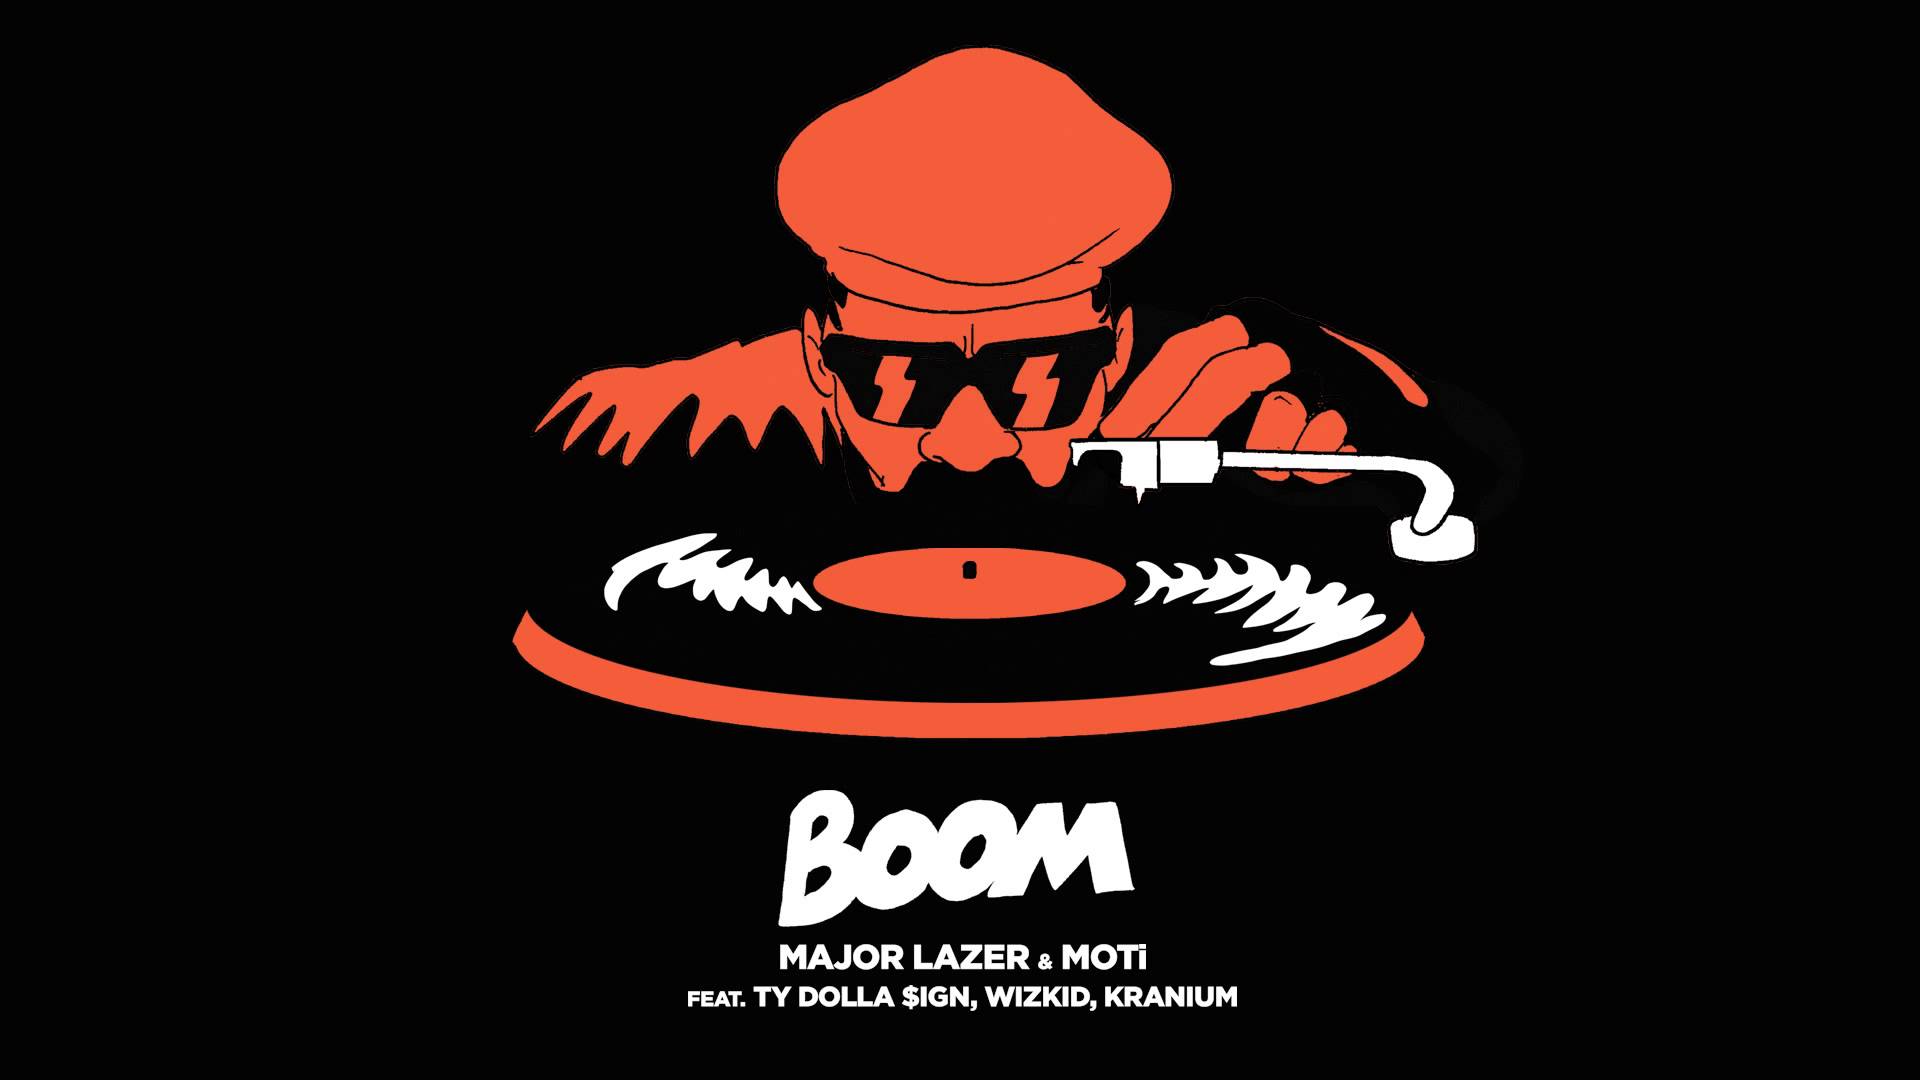 Major lazer remix. Major Lazer. Major Lazer & Moti & ty Dolla $IGN & Wizkid & Kranium - Boom. Major Lazer & Moti - Boom. Major Lazer Moti Boom feat. Ty Dolla $IGN, Wizkid, Kranium.